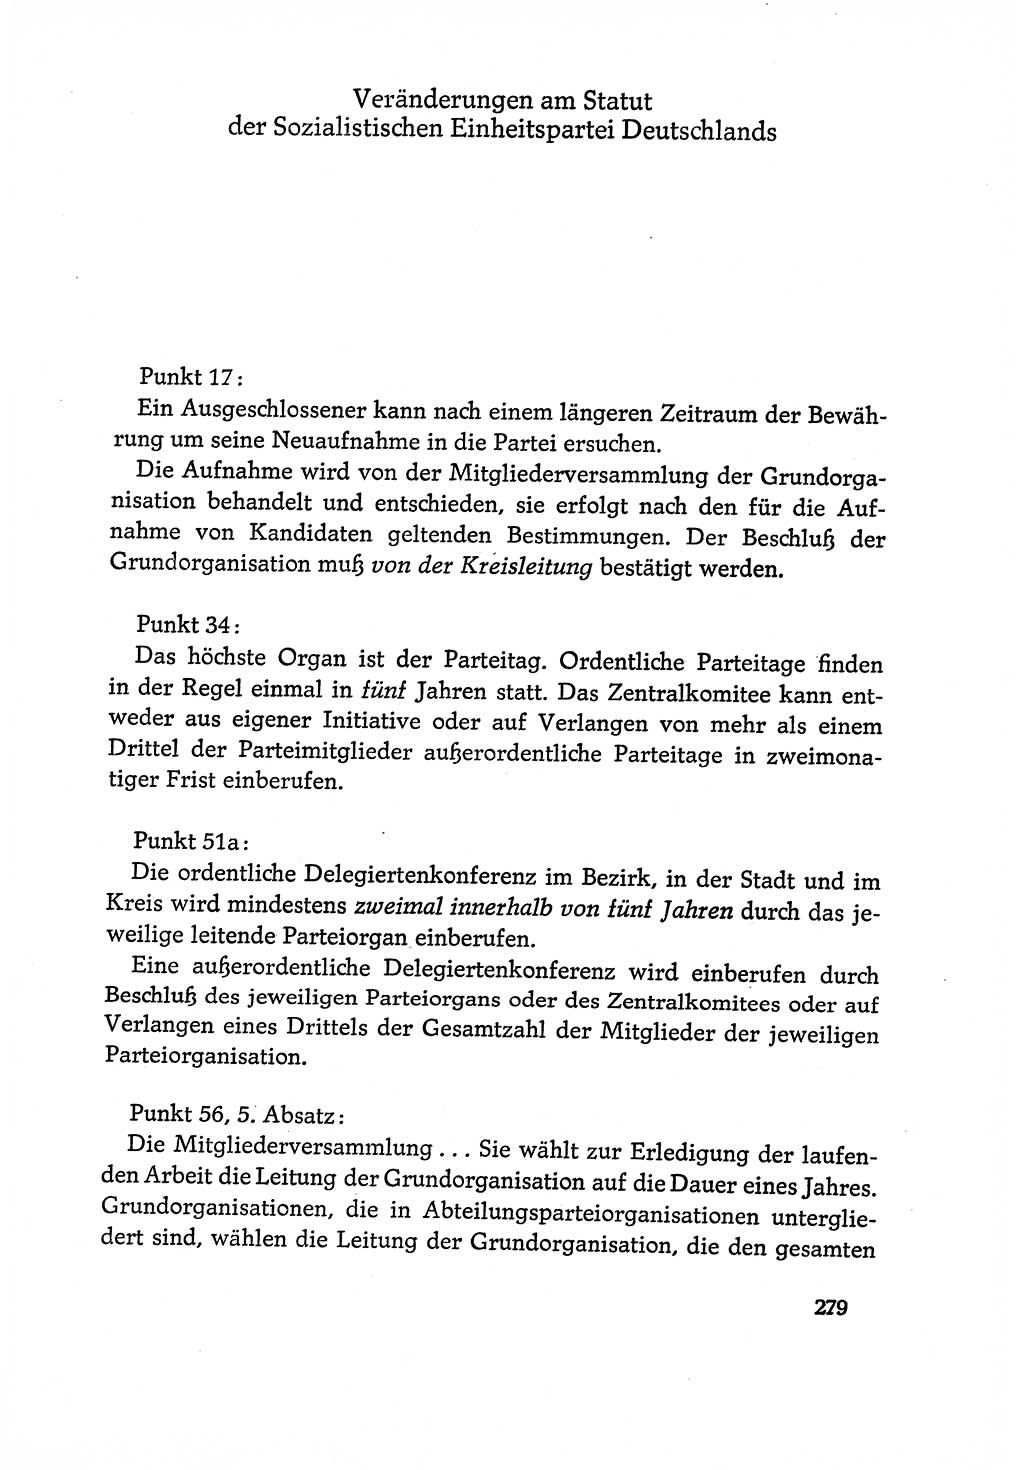 Dokumente der Sozialistischen Einheitspartei Deutschlands (SED) [Deutsche Demokratische Republik (DDR)] 1970-1971, Seite 279 (Dok. SED DDR 1970-1971, S. 279)